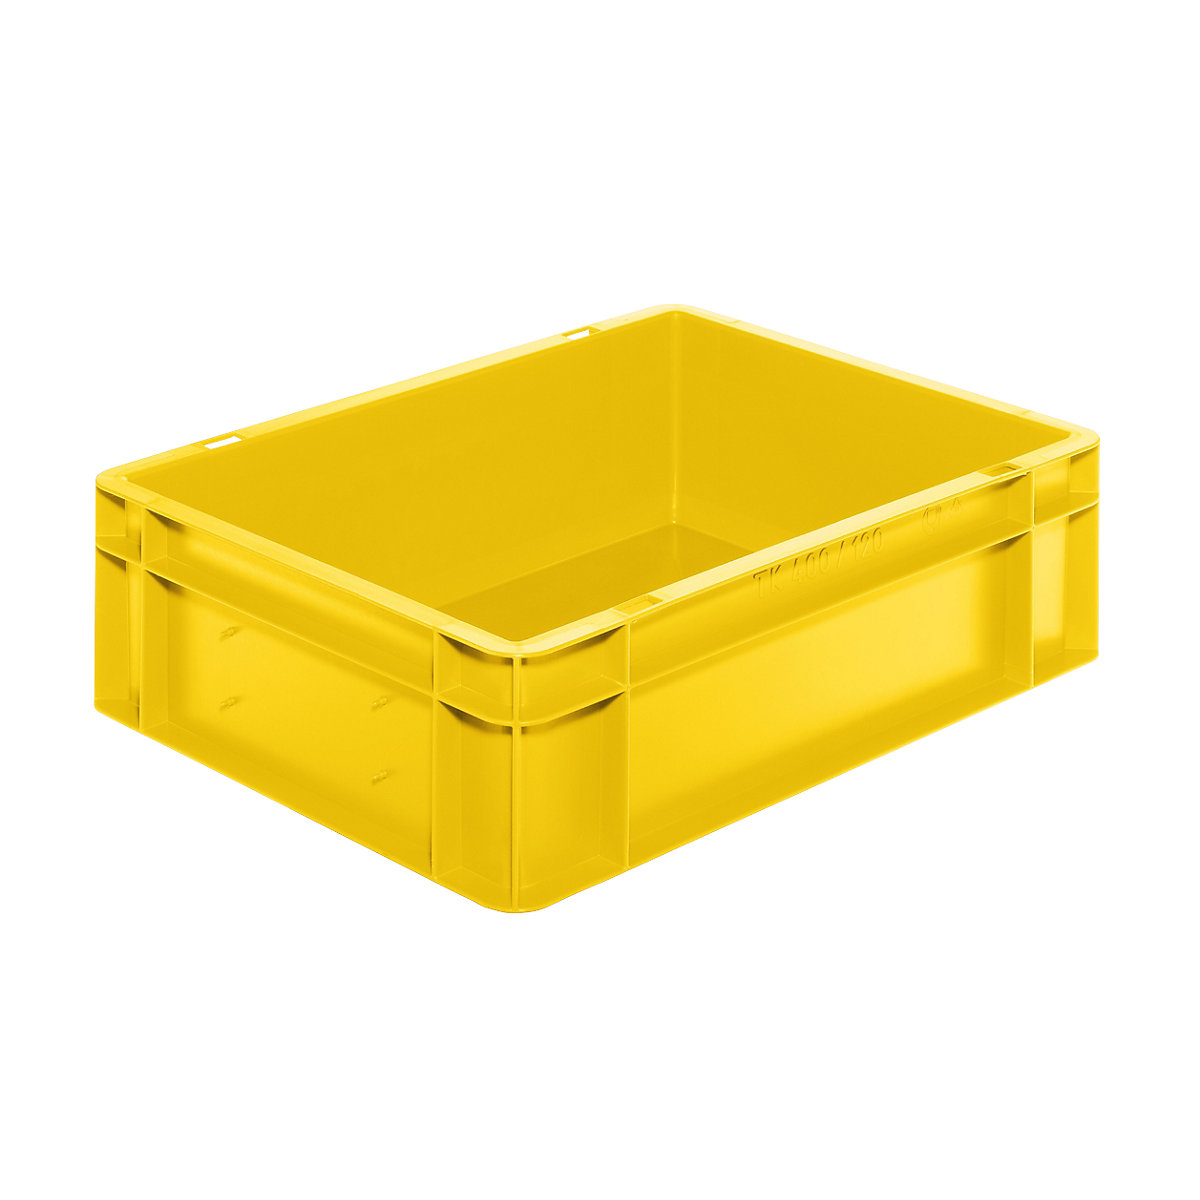 Euro-Format-Stapelbehälter, Wände und Boden geschlossen, LxBxH 400 x 300 x 120 mm, gelb, VE 5 Stk